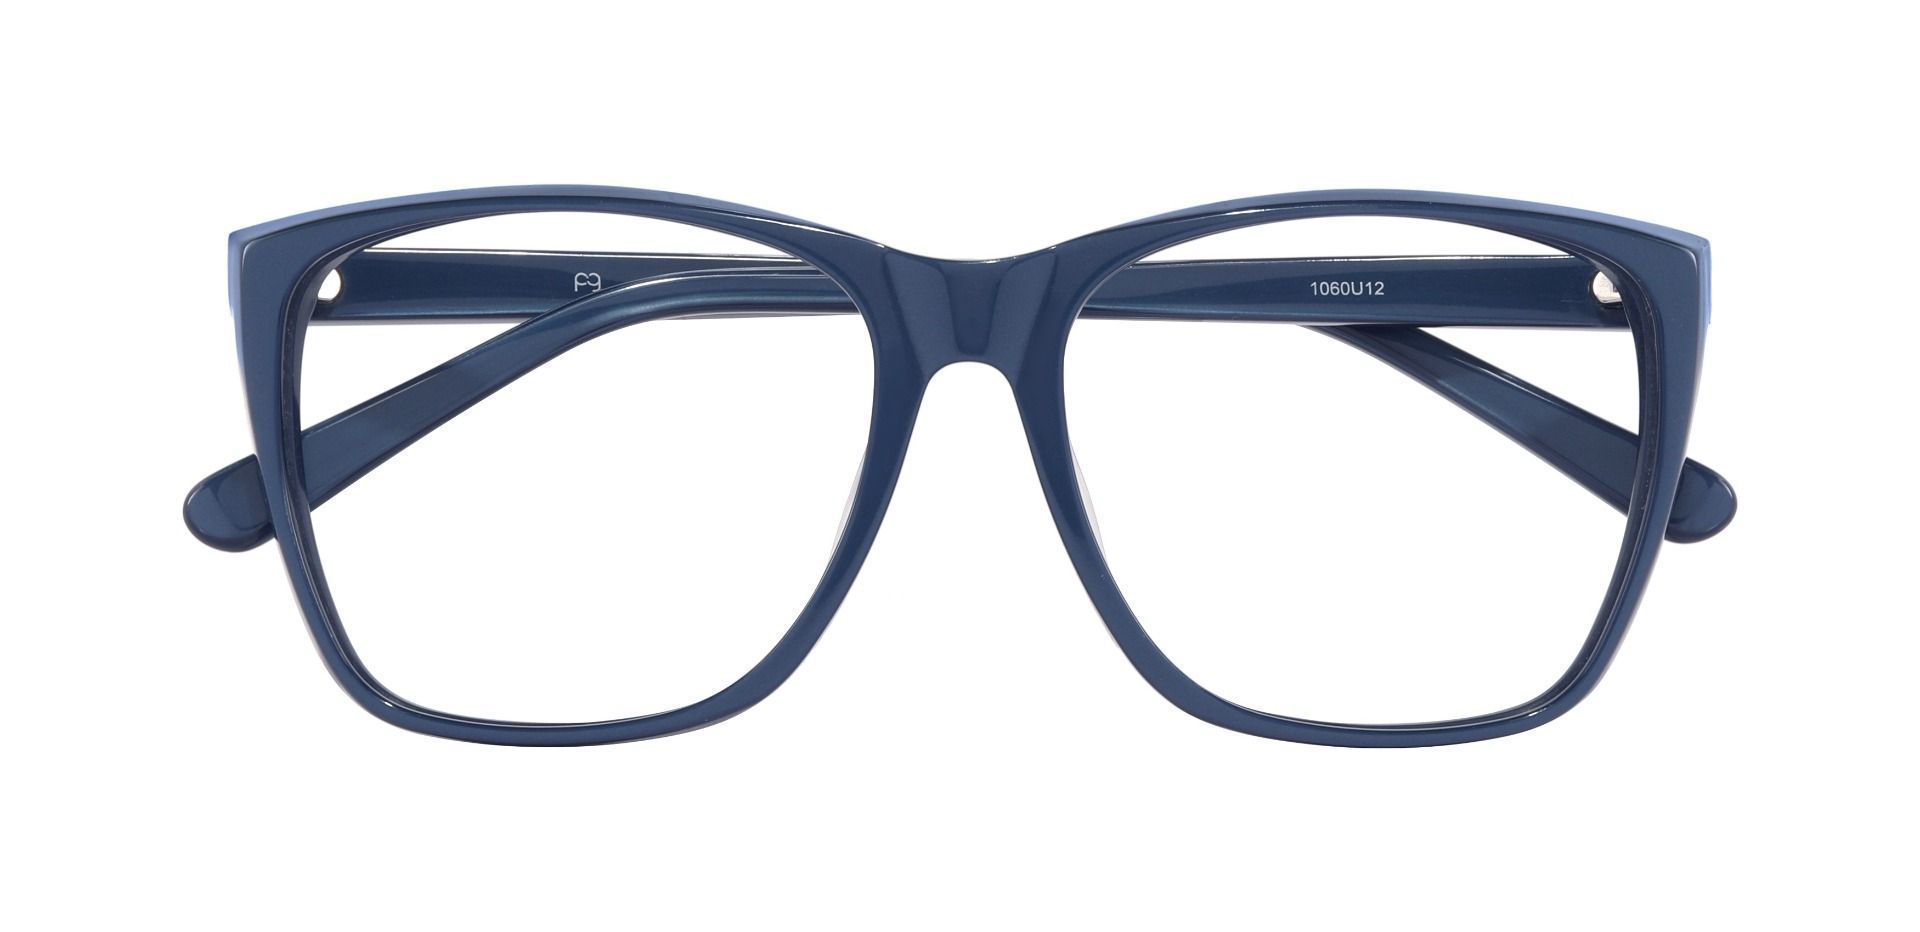 Loni Square Prescription Glasses - Blue